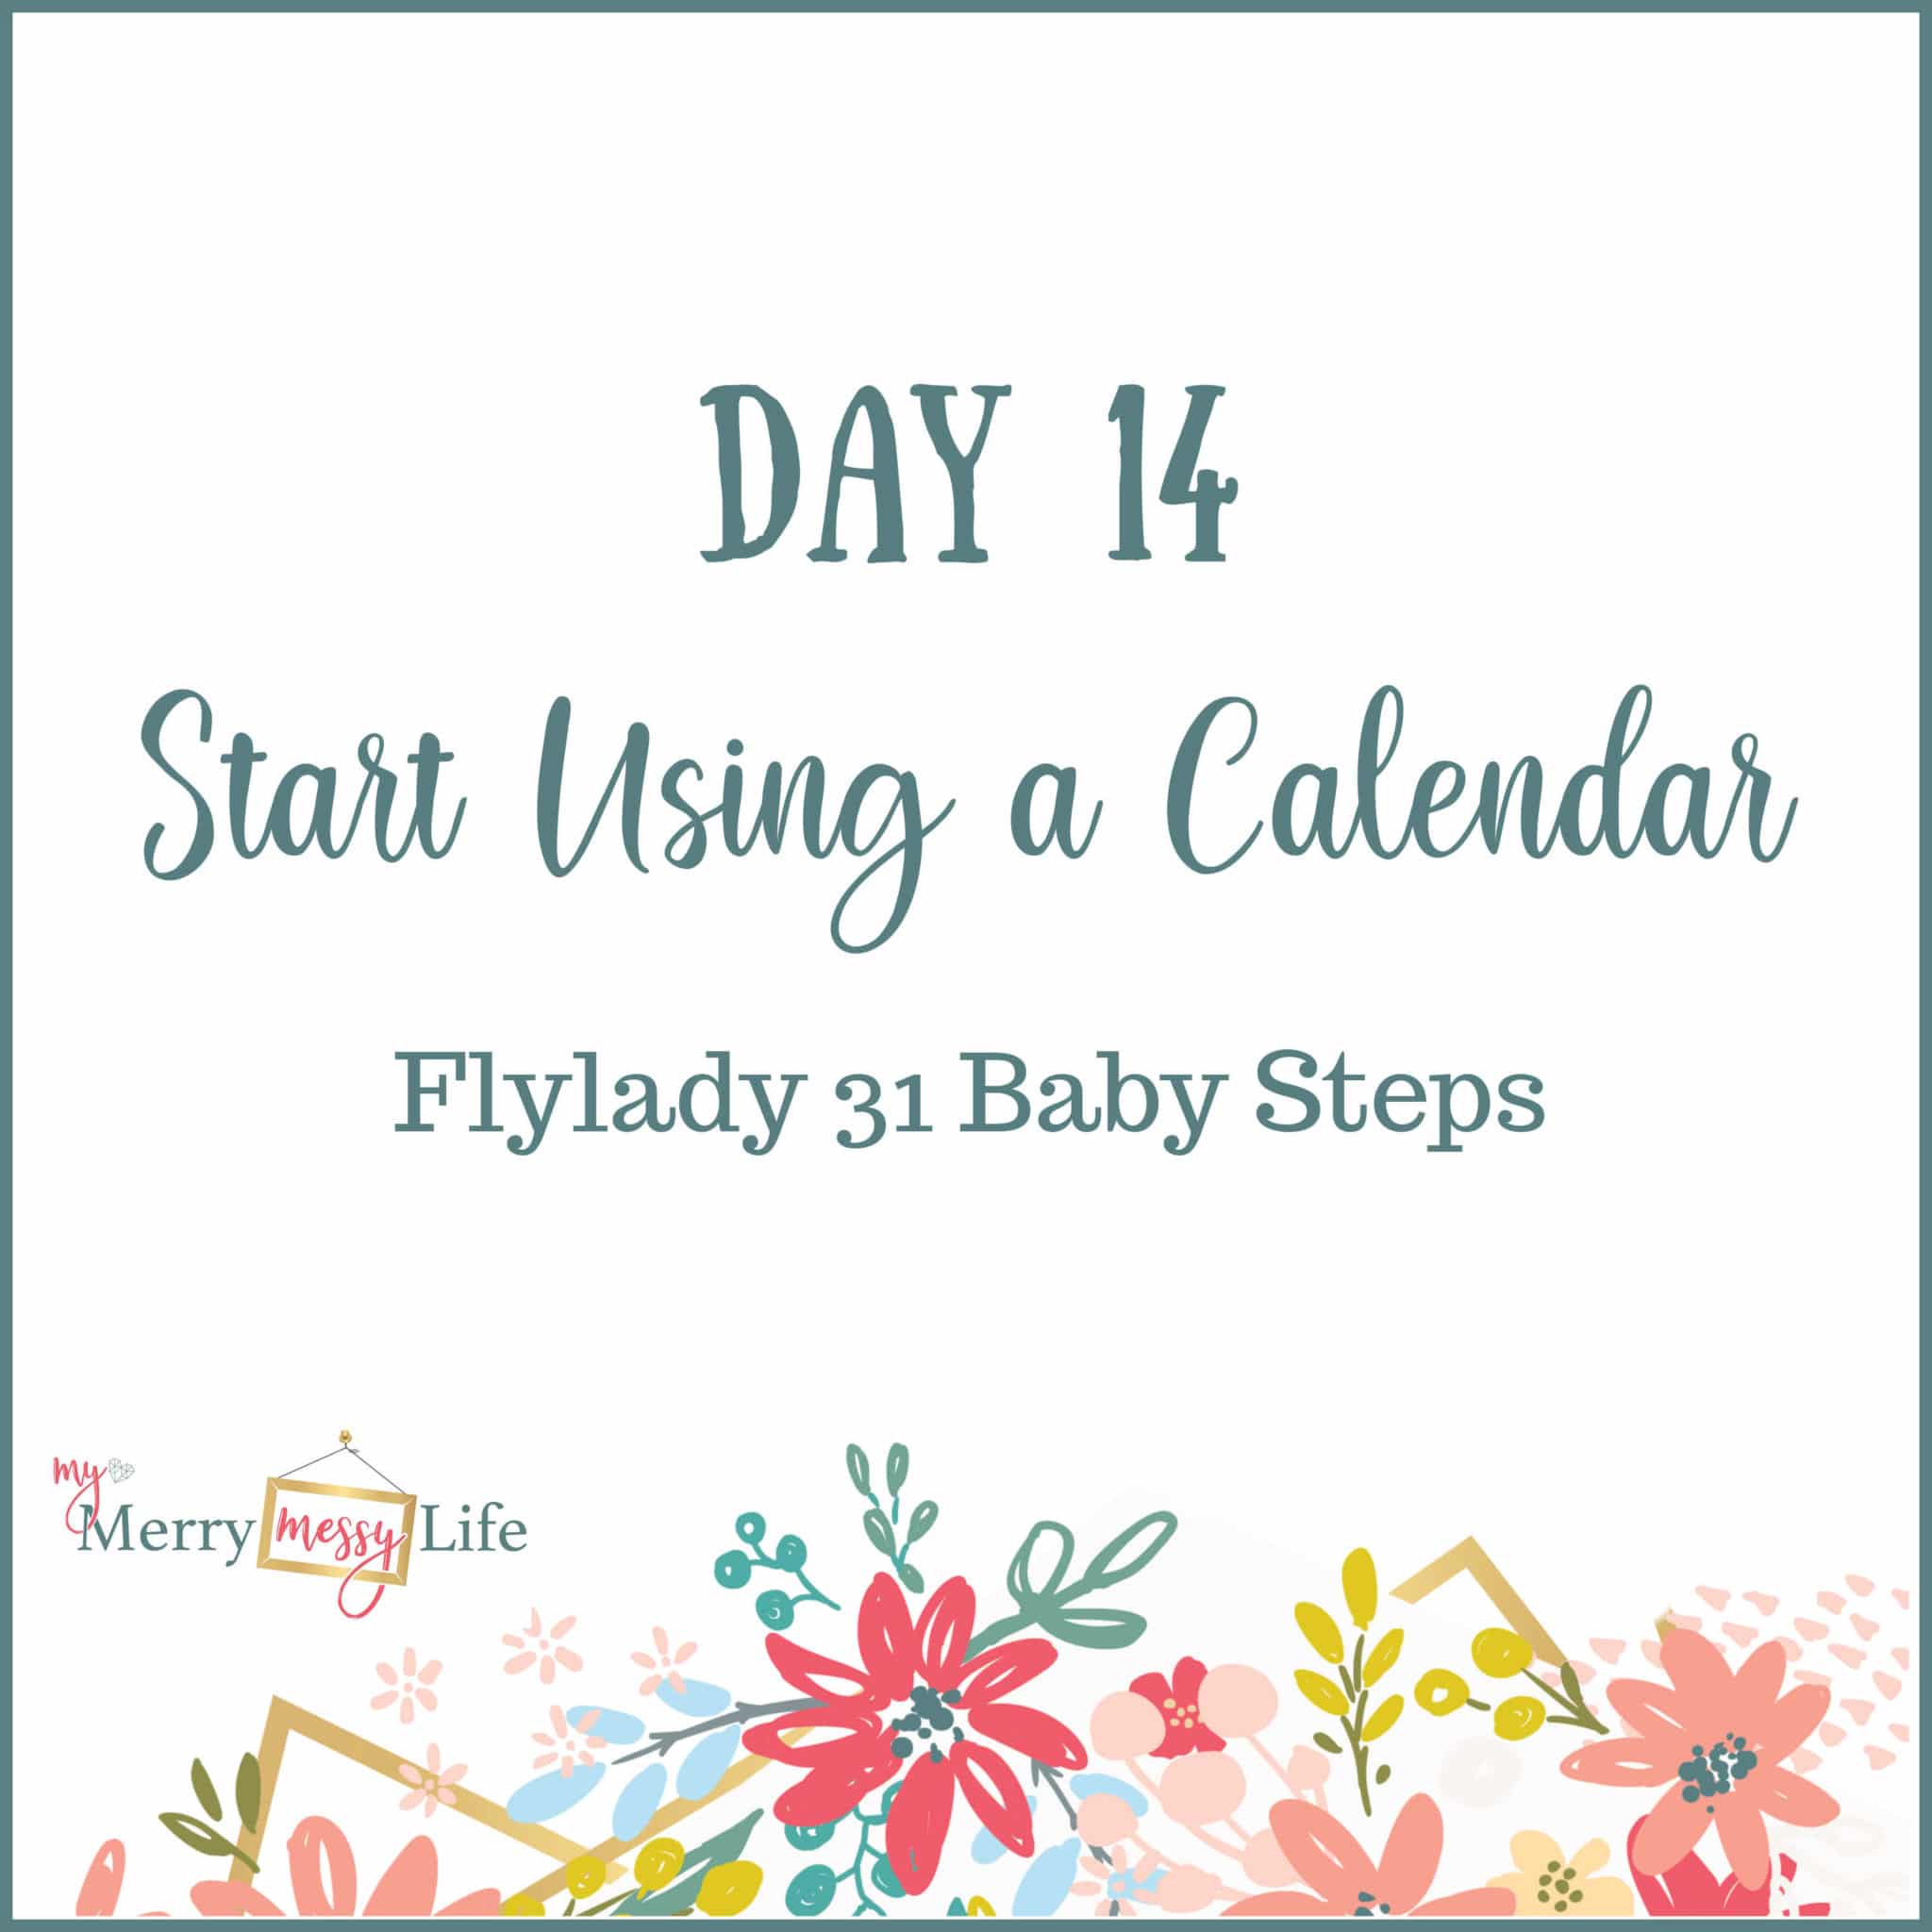 Flylady 31 Baby Steps - Day 14 - Start Using a Calendar